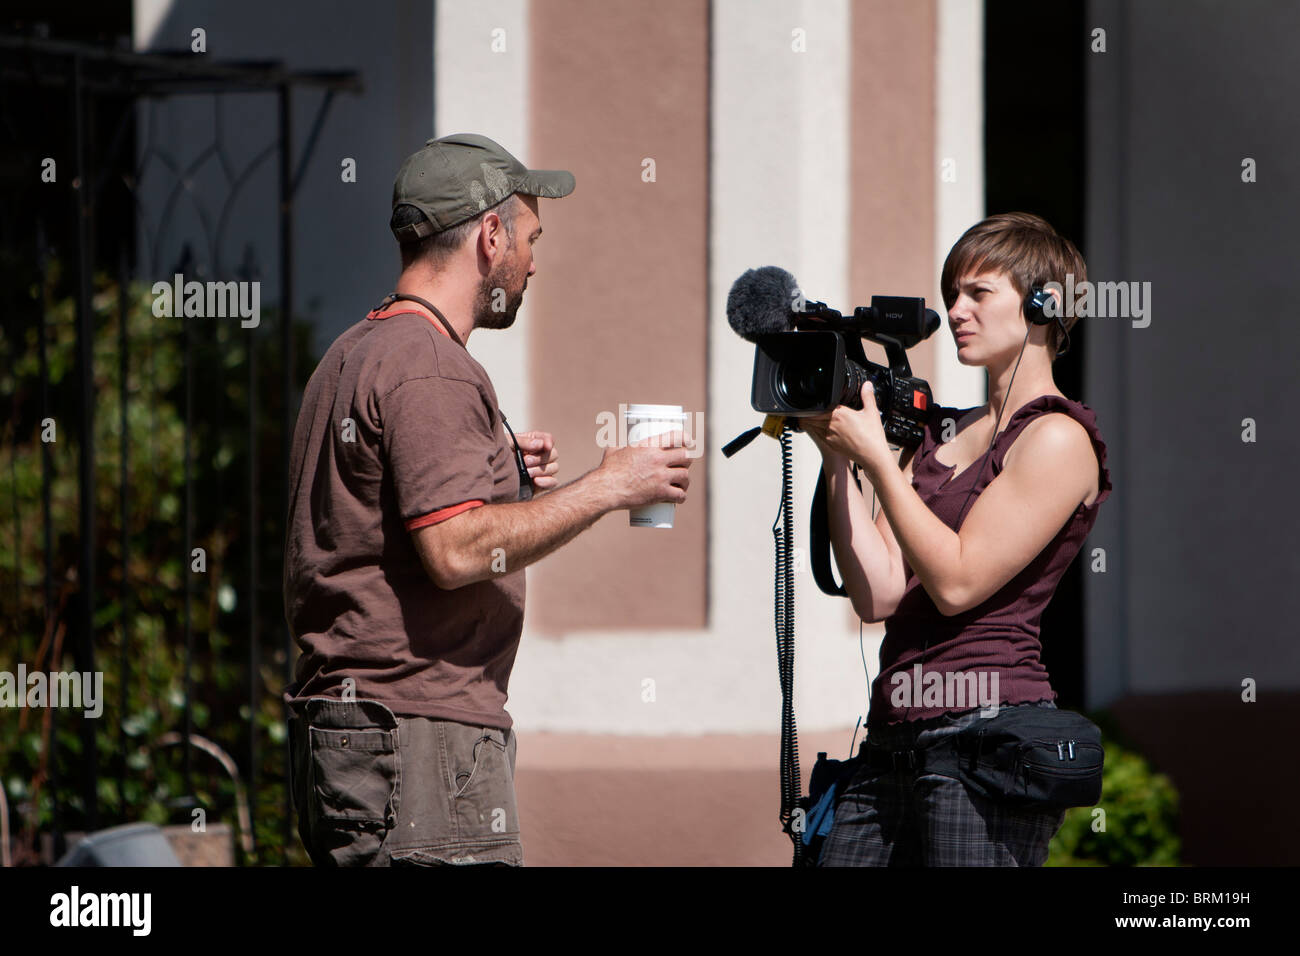 Reality-TV show star und IMAX Regisseur Sean Casey wird von Discovery Channel Kamerafrau befragt Stockfoto